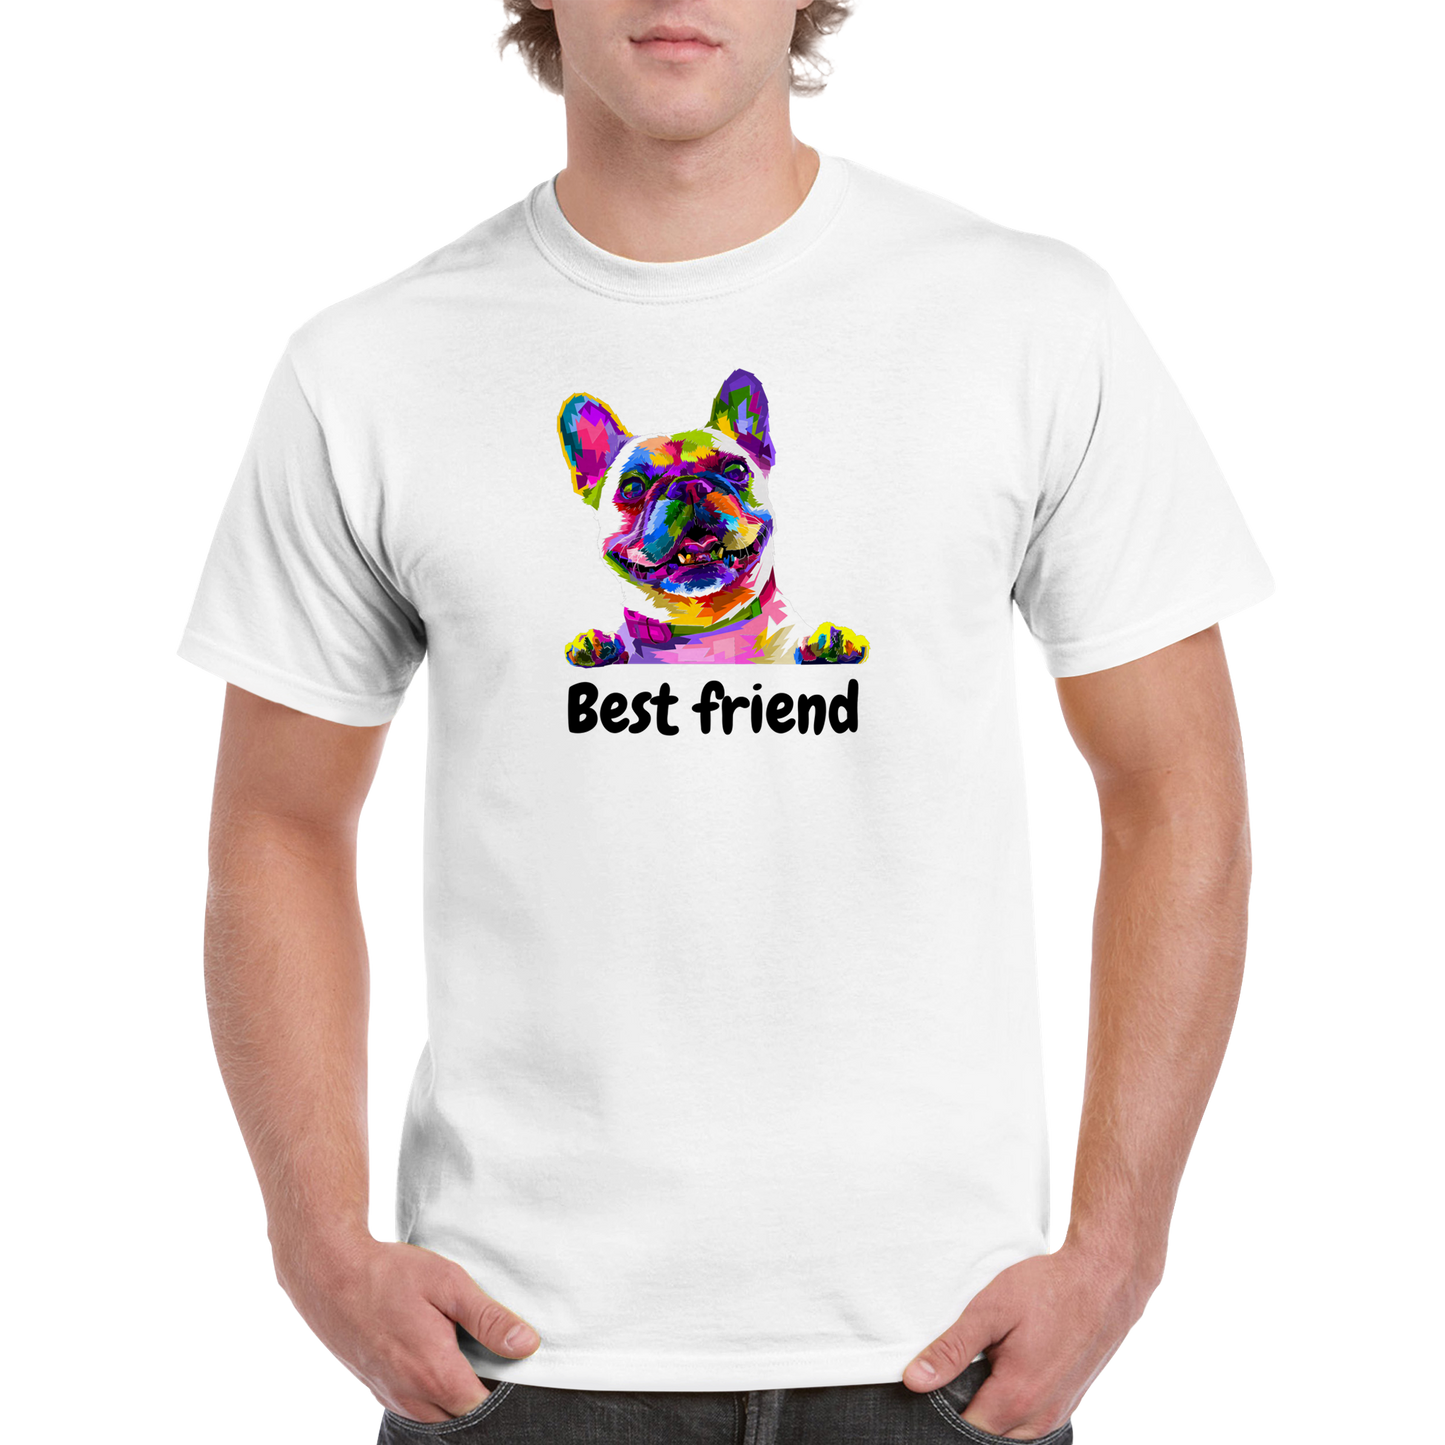 Best friend Heavyweight Unisex Crewneck T-shirt